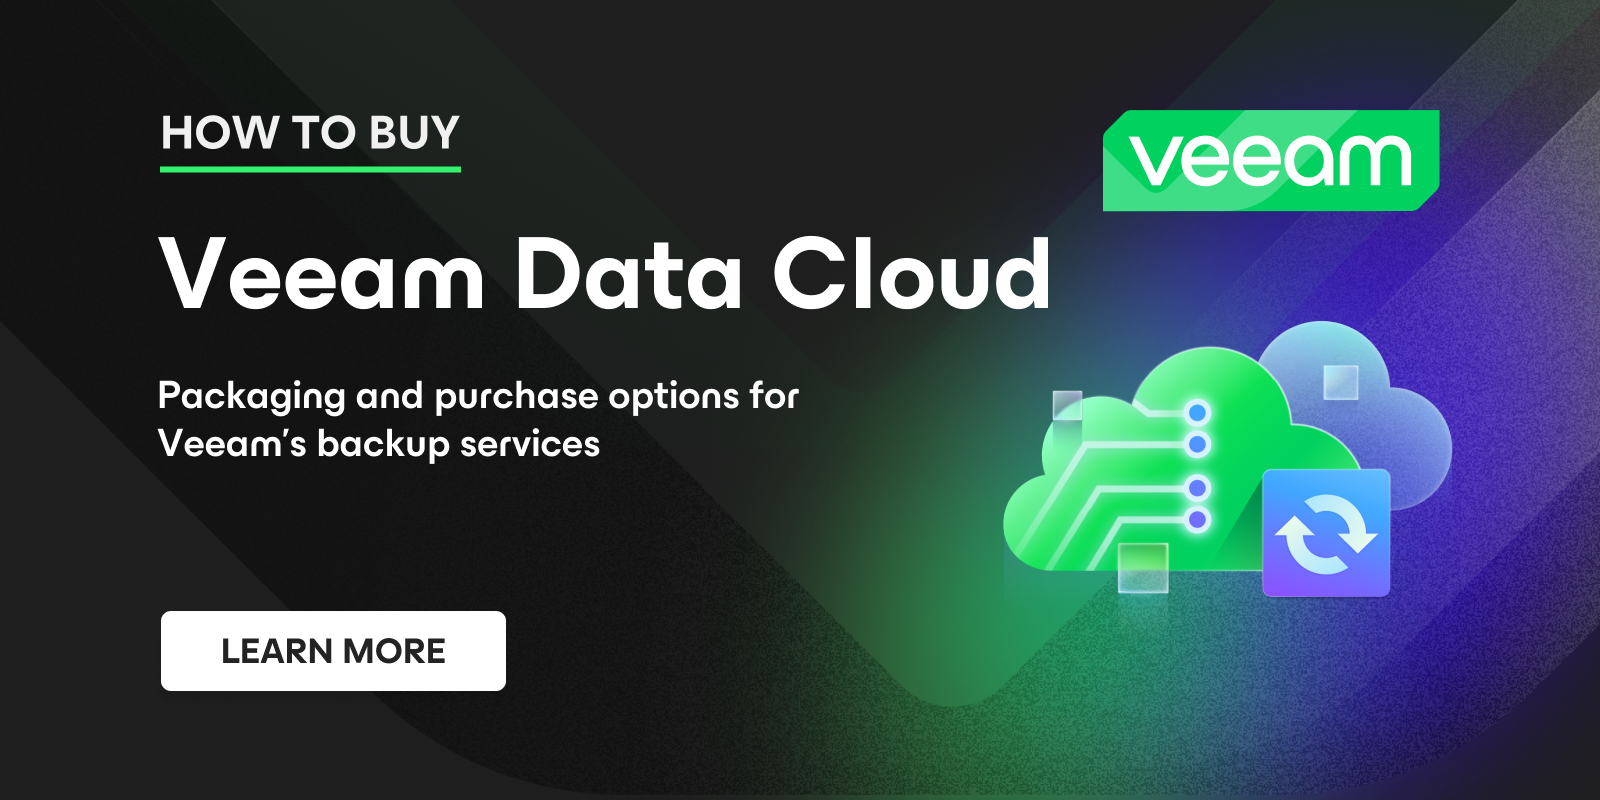 How to Buy | Veeam Data Cloud